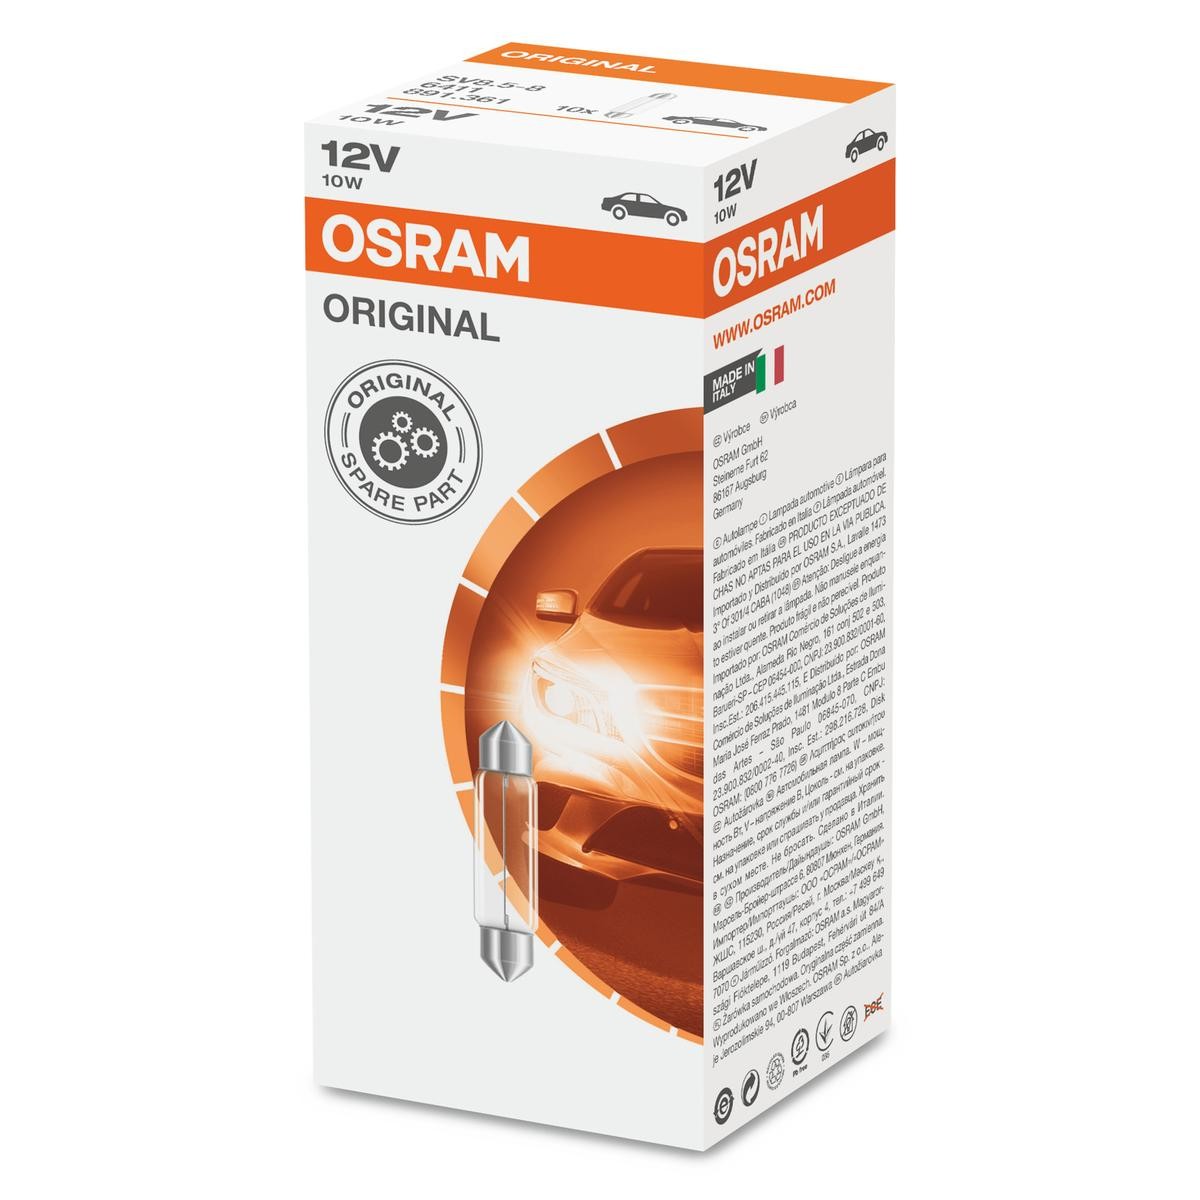 Glödlampa OSRAM 6411 - Invändig utrustning till Volvo delar order